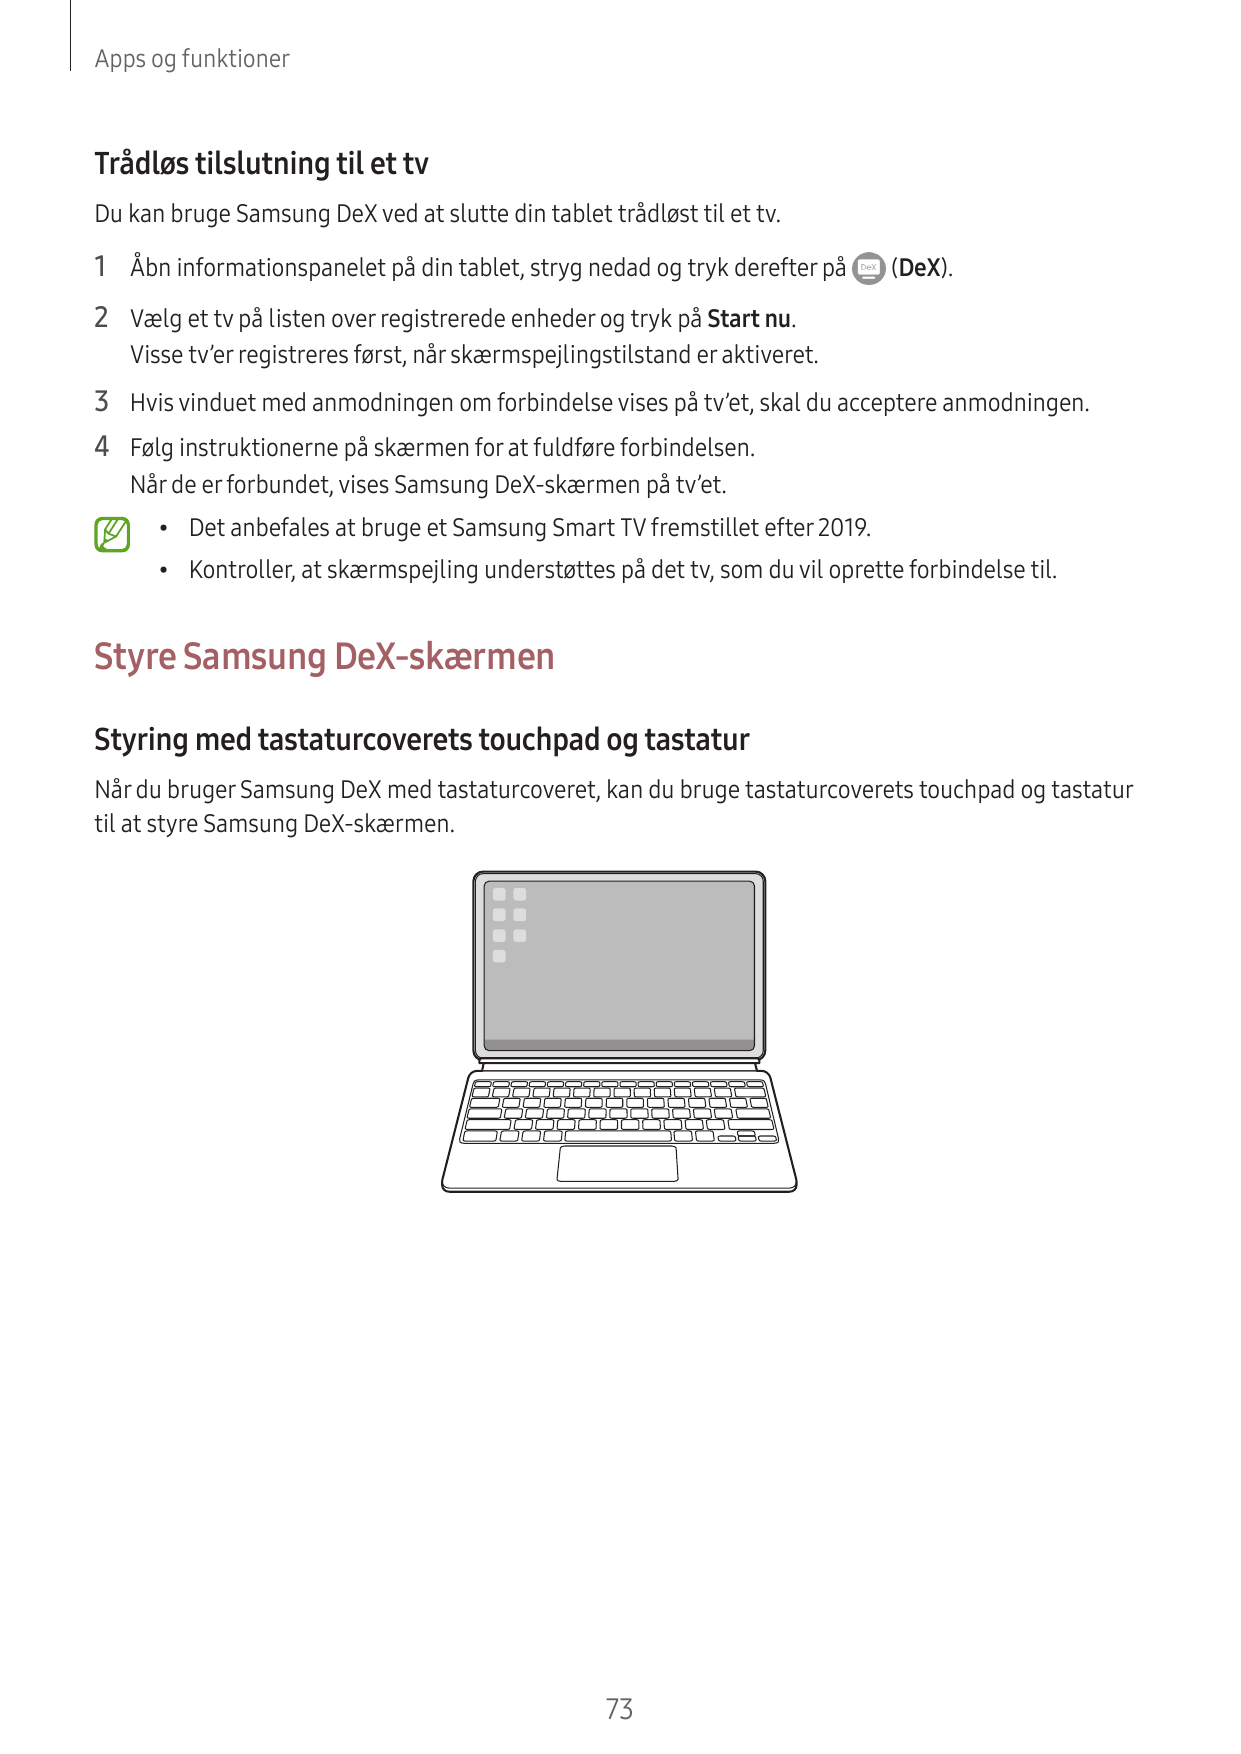 Apps og funktionerTrådløs tilslutning til et tvDu kan bruge Samsung DeX ved at slutte din tablet trådløst til et tv.1 Åbn inform